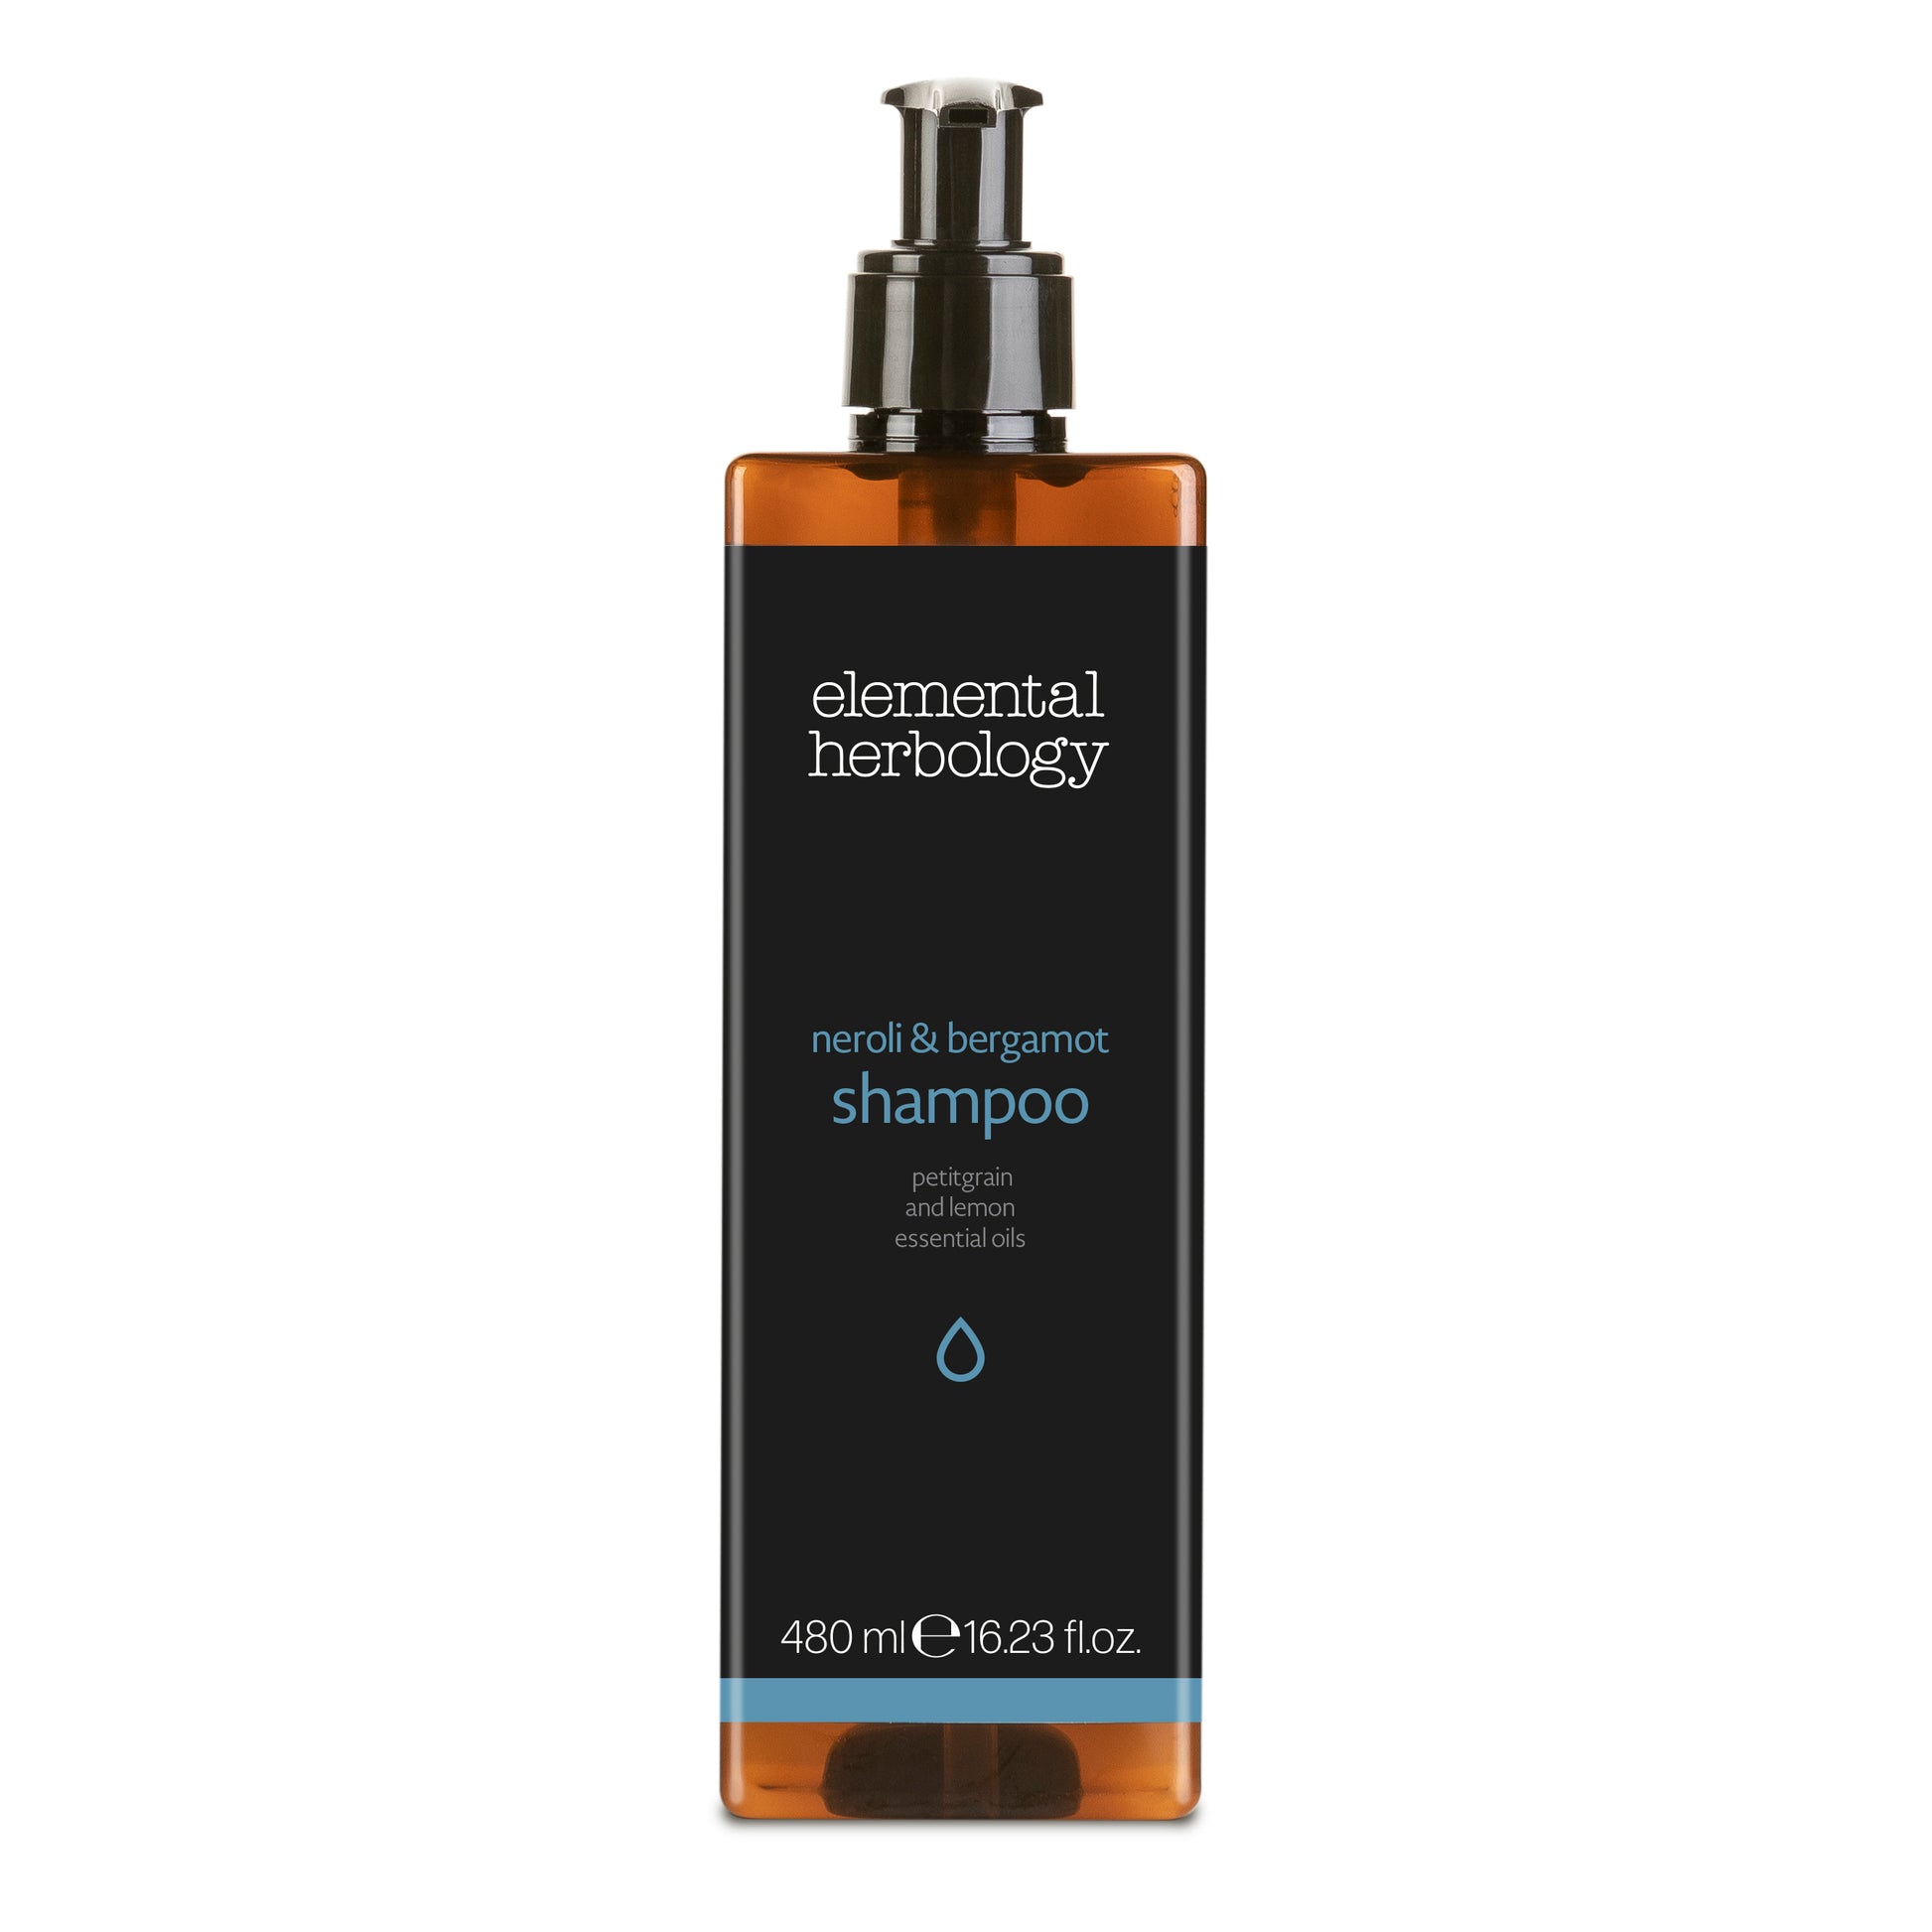 Elemental Herbology neroli and bergamot shampoo in 480ml pump dispenser bottle